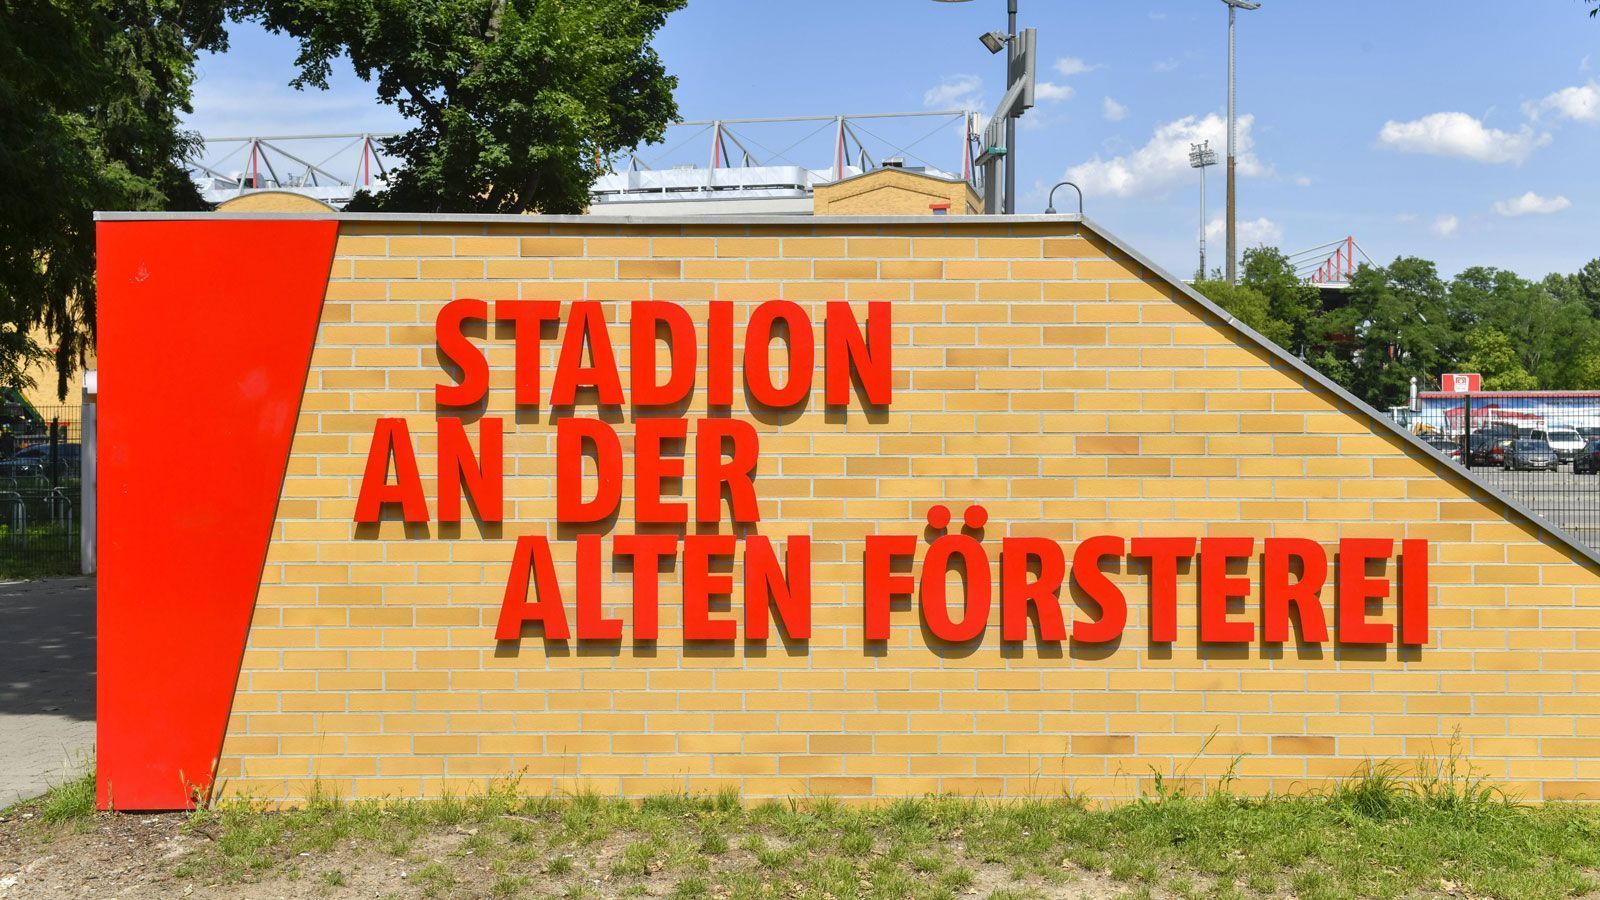 
                <strong>1. FC Union Berlin -  SC Freiburg</strong><br>
                 - Stadion: Stadion An der Alten Försterei - Kapazität: 22.012 - Zugelassene Zuschauer: 5.000 - 7-Tage-Inzidenz: 48,8 (im Bezirk Treptow-Köpenick)
              